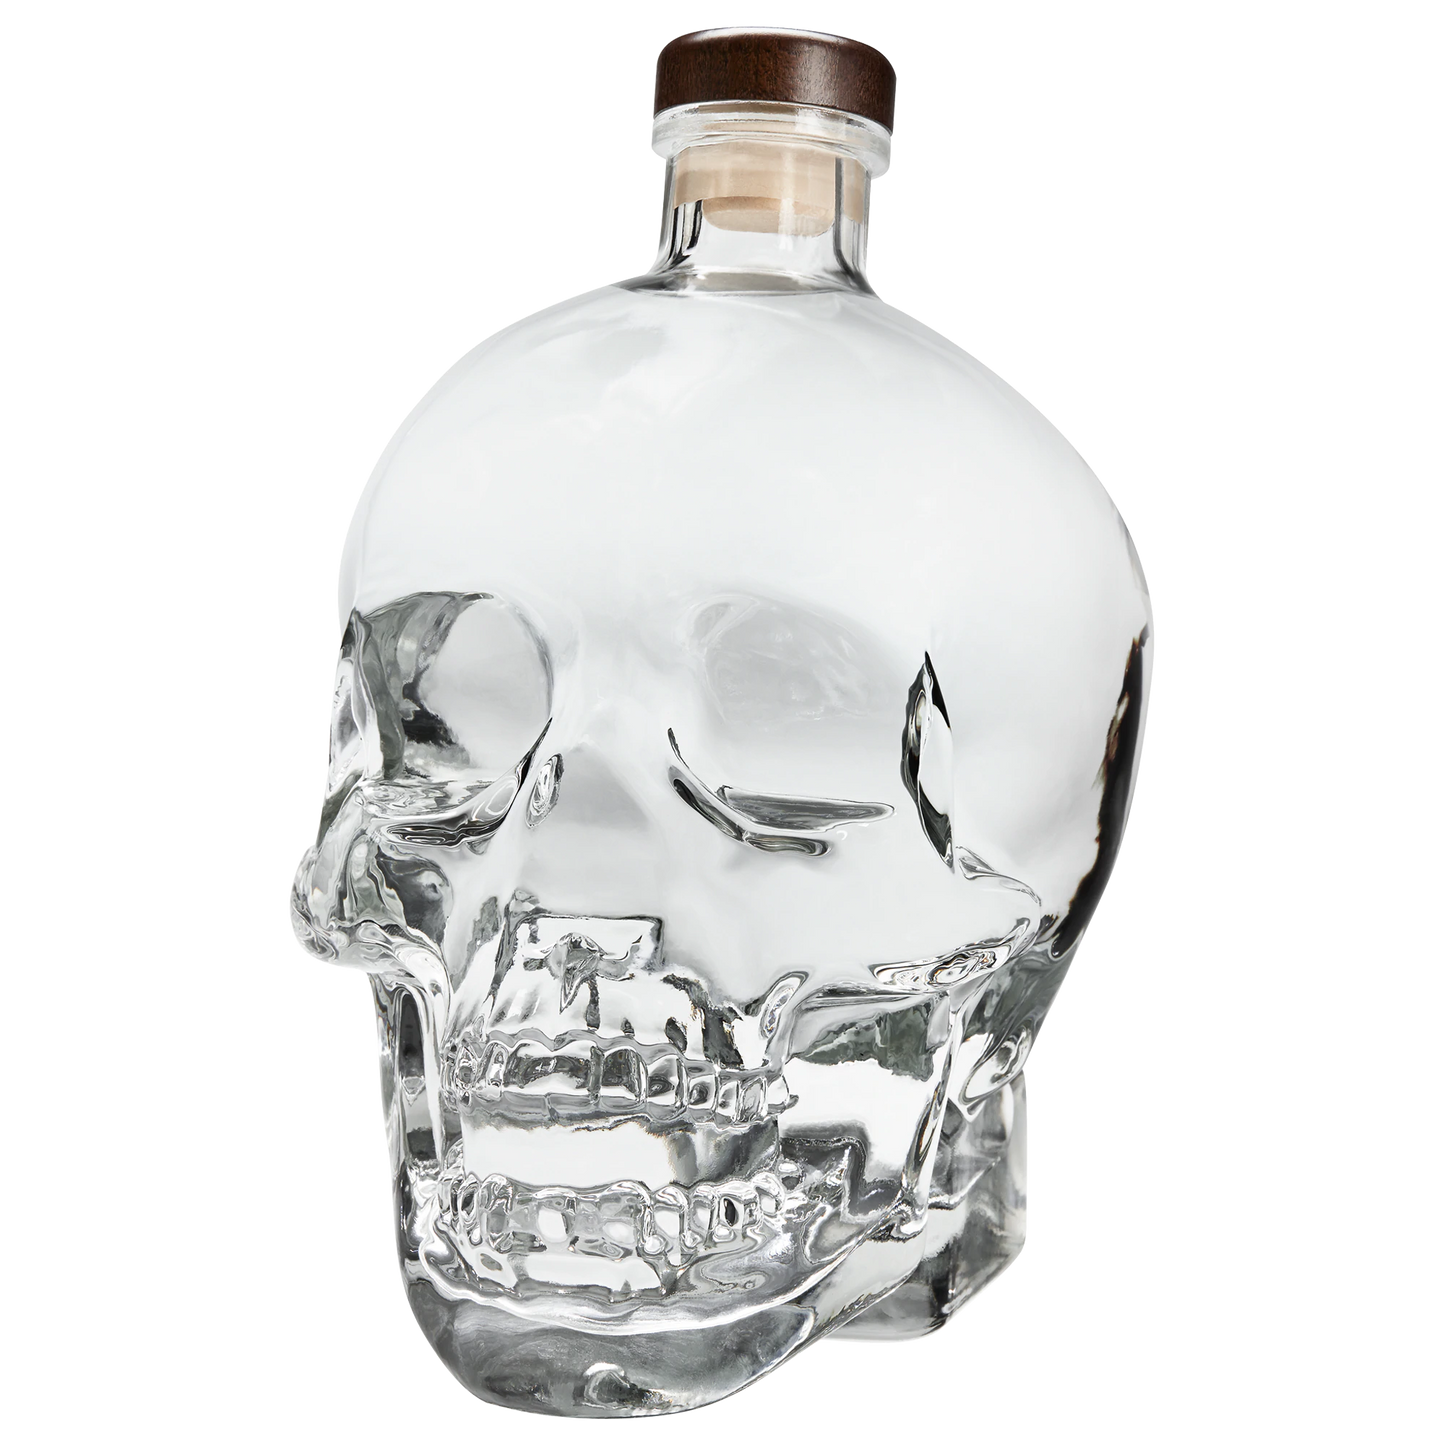 Crystal Head Vodka 1.75L